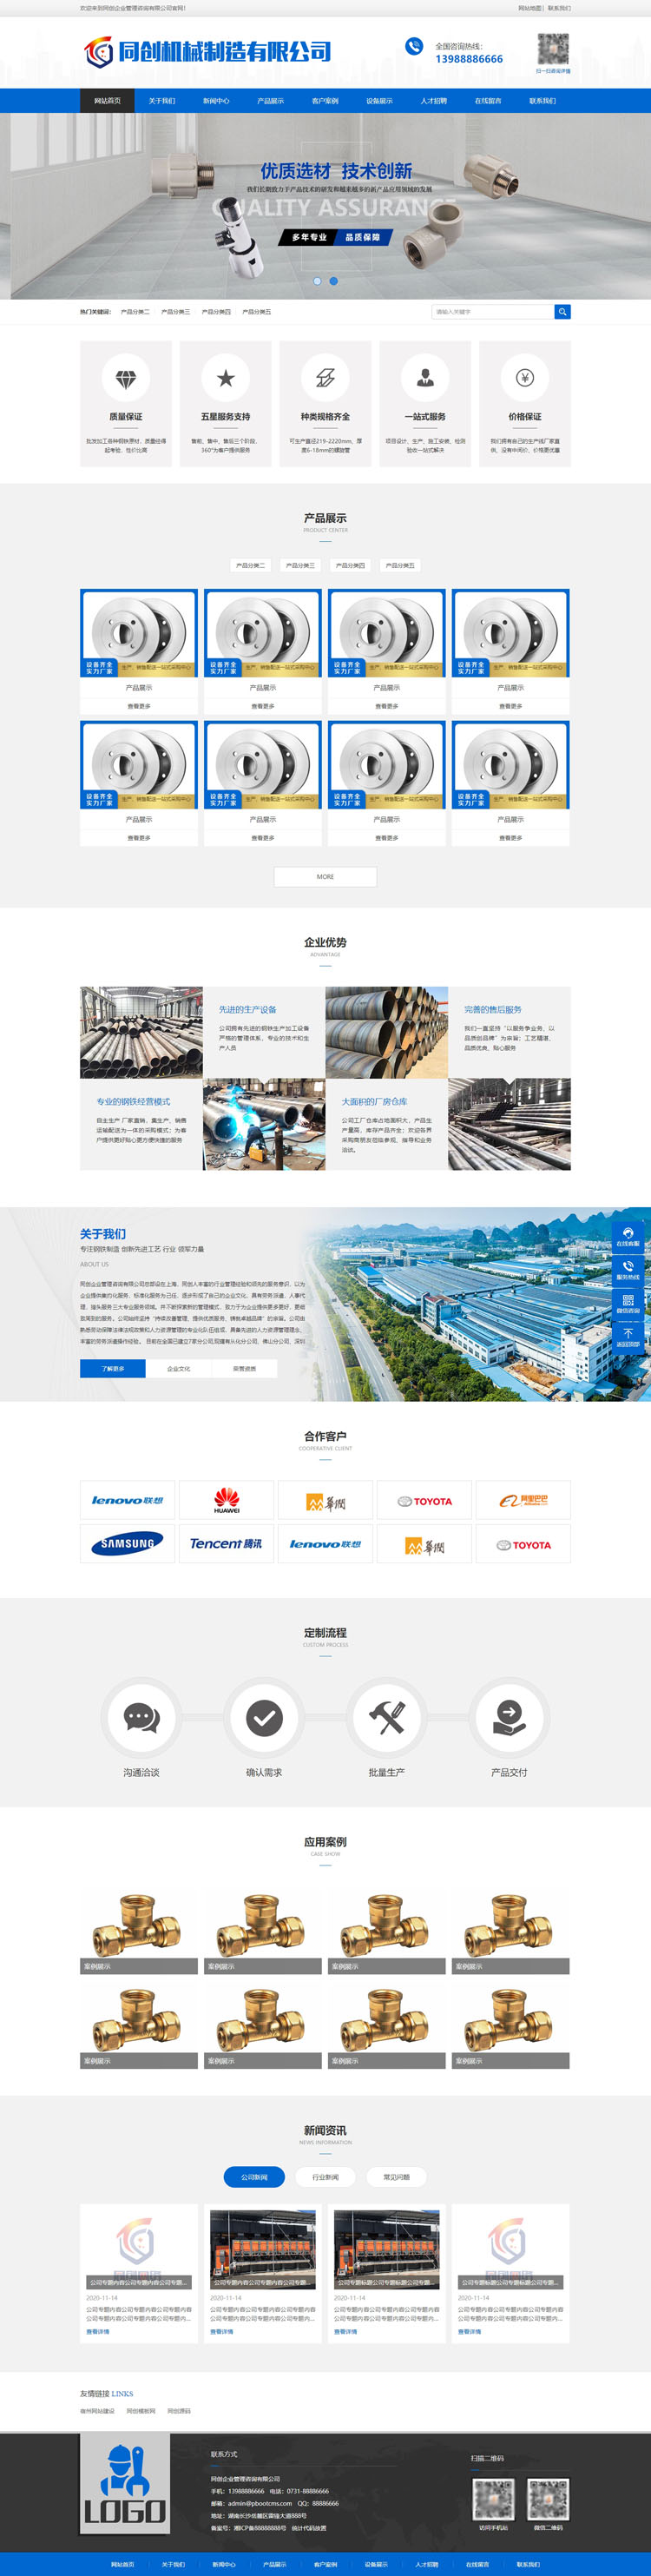 宽屏金属设备企业网站模板程序-TC059-2